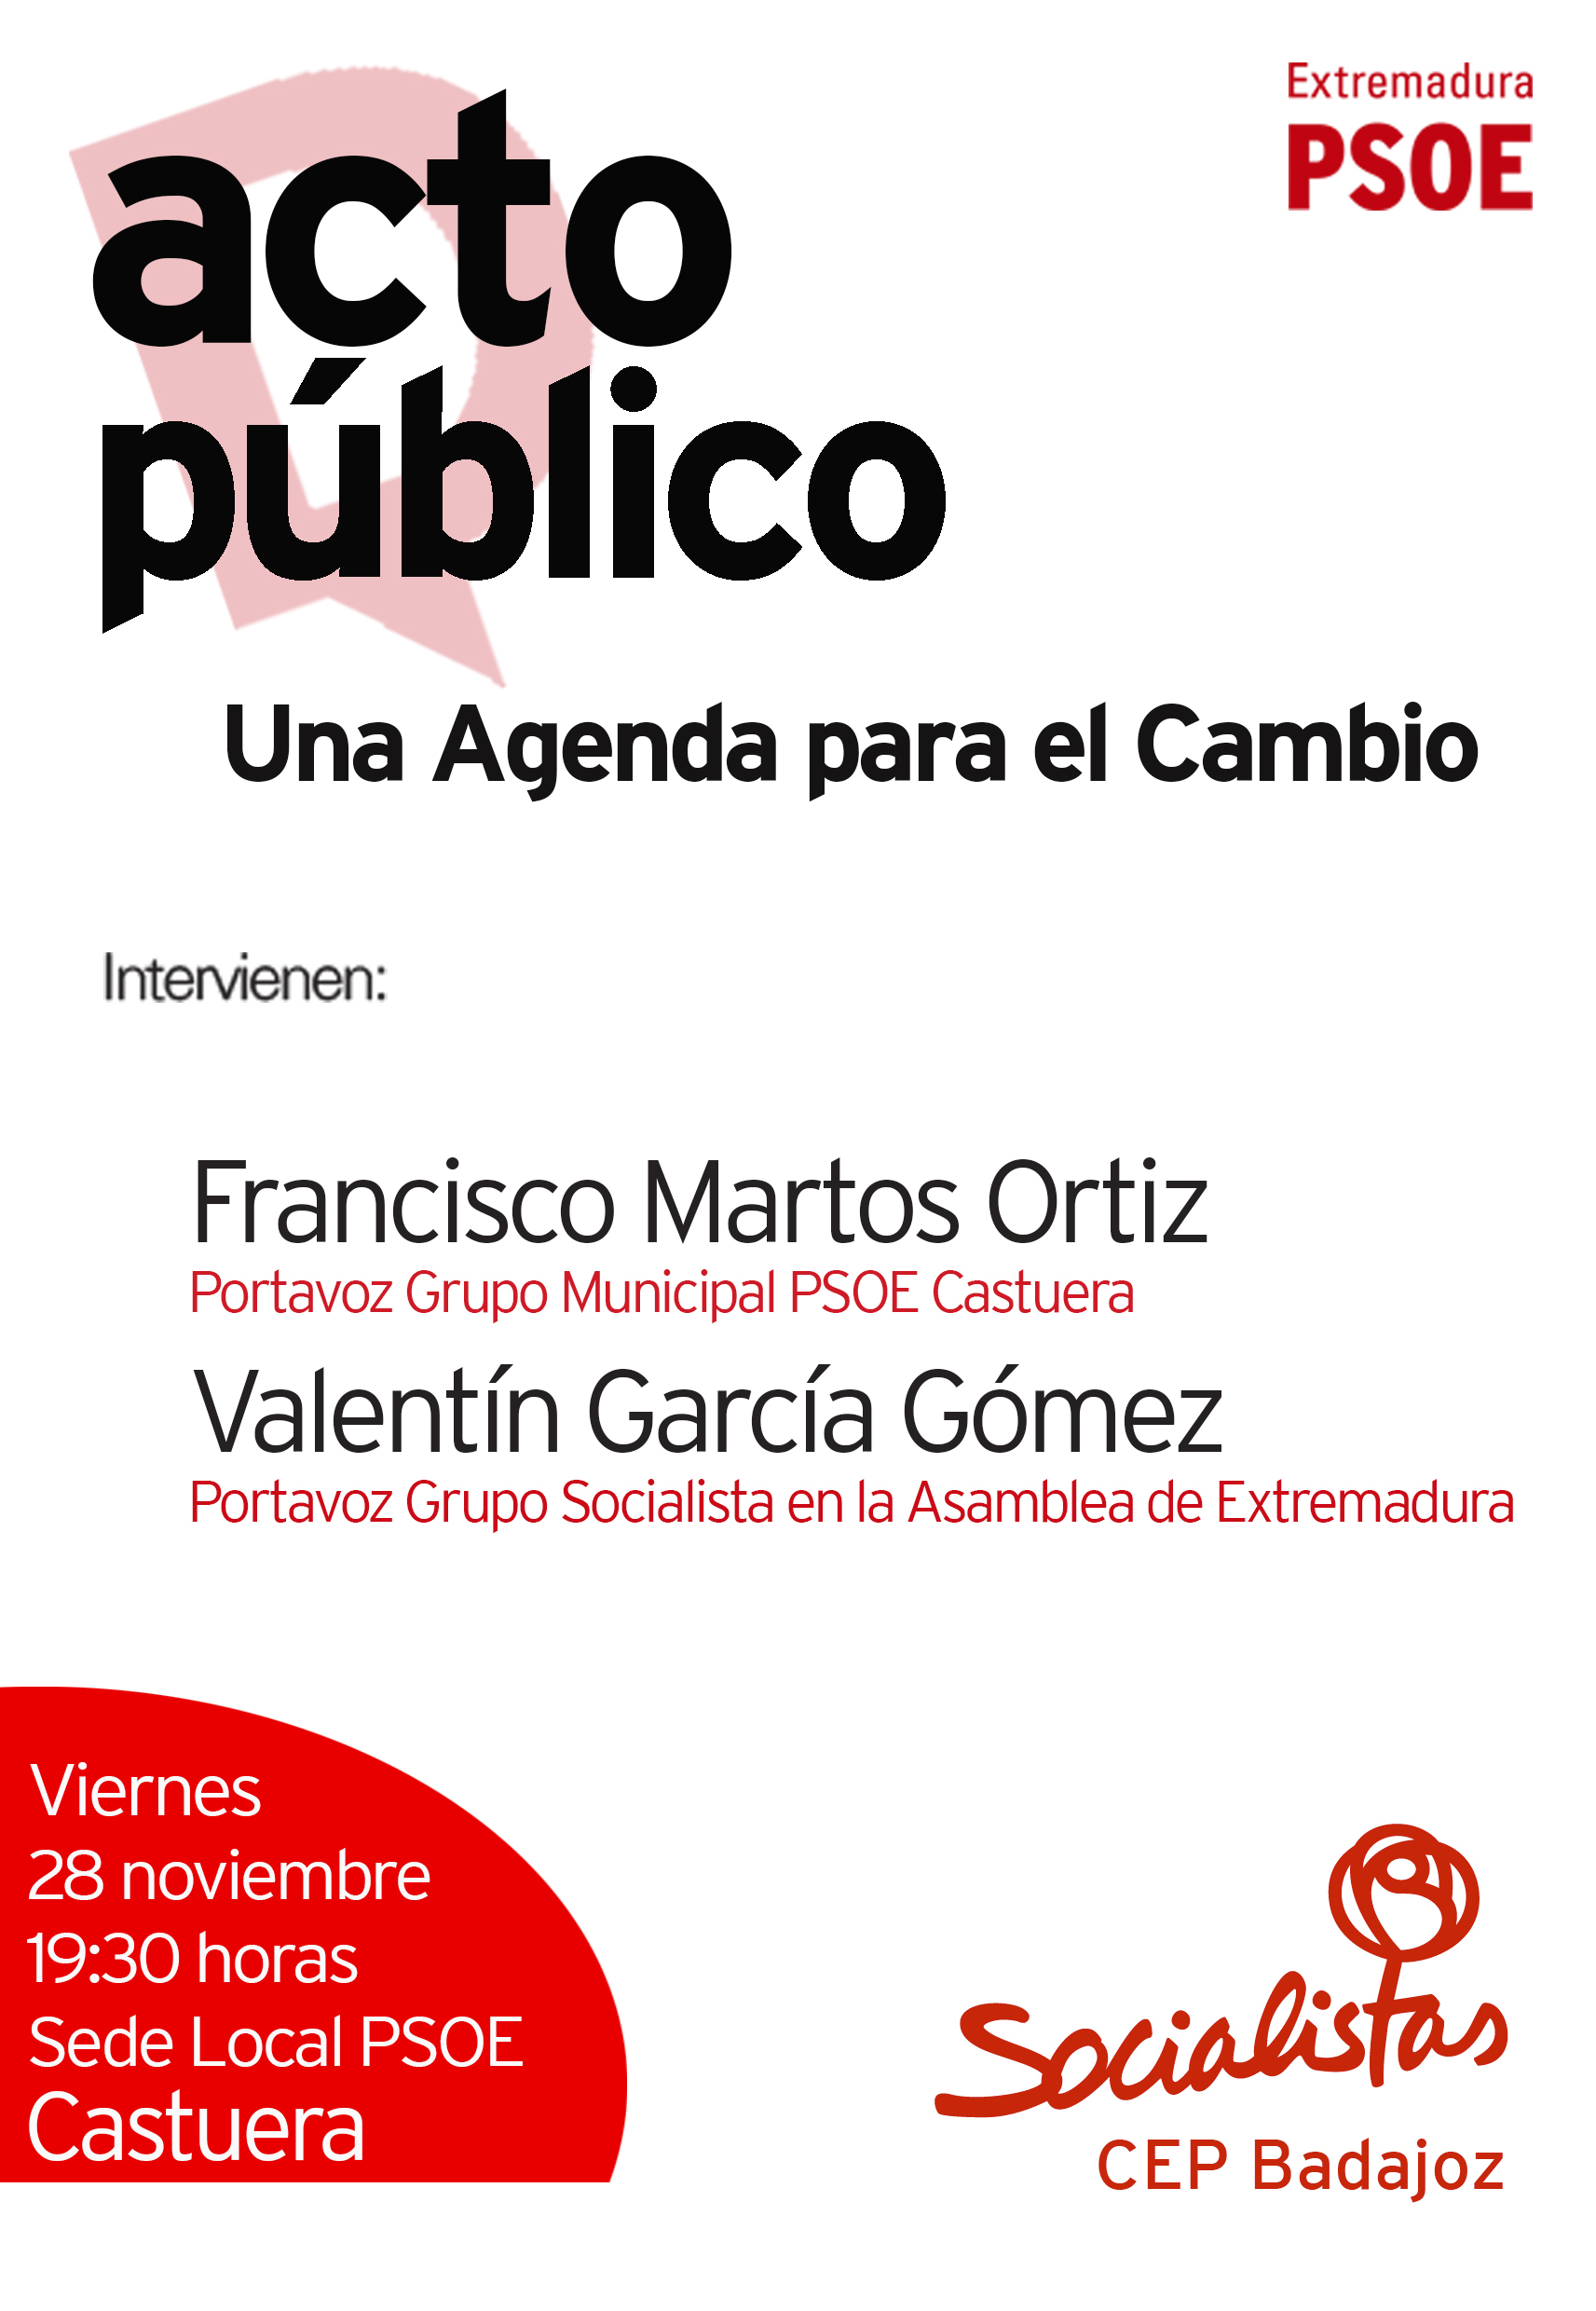 El PSOE organiza un acto público para dar a conocer la campaña "Una Agenda para el Cambio"